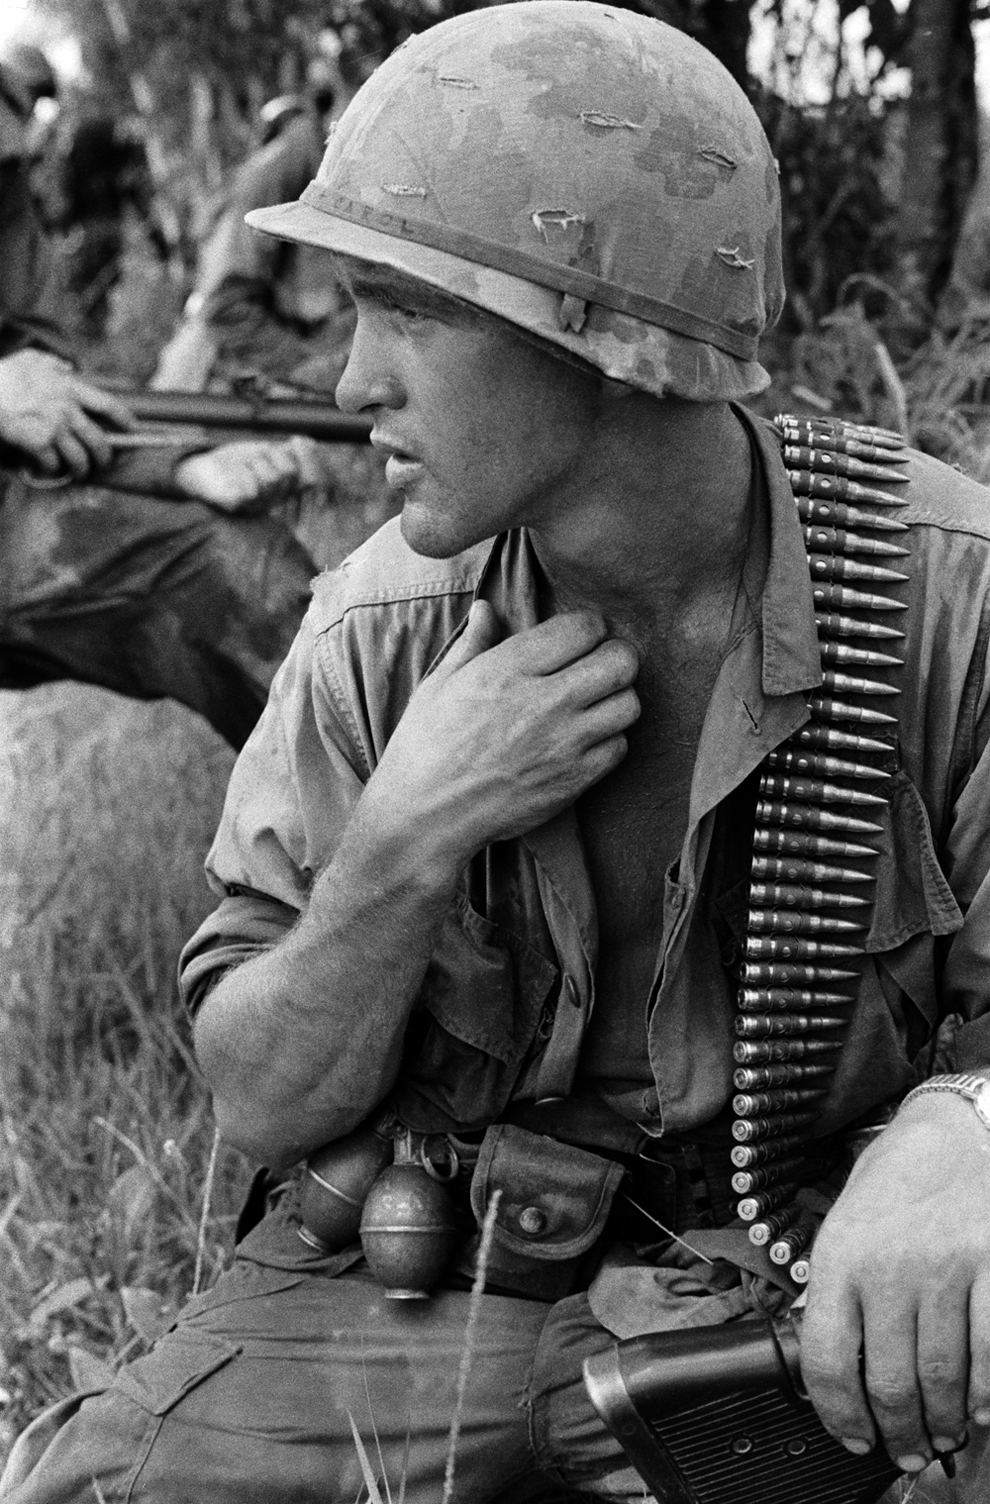 bp15 - Hình ảnh hiếm gây chấn động về cuộc chiến ở Việt Nam